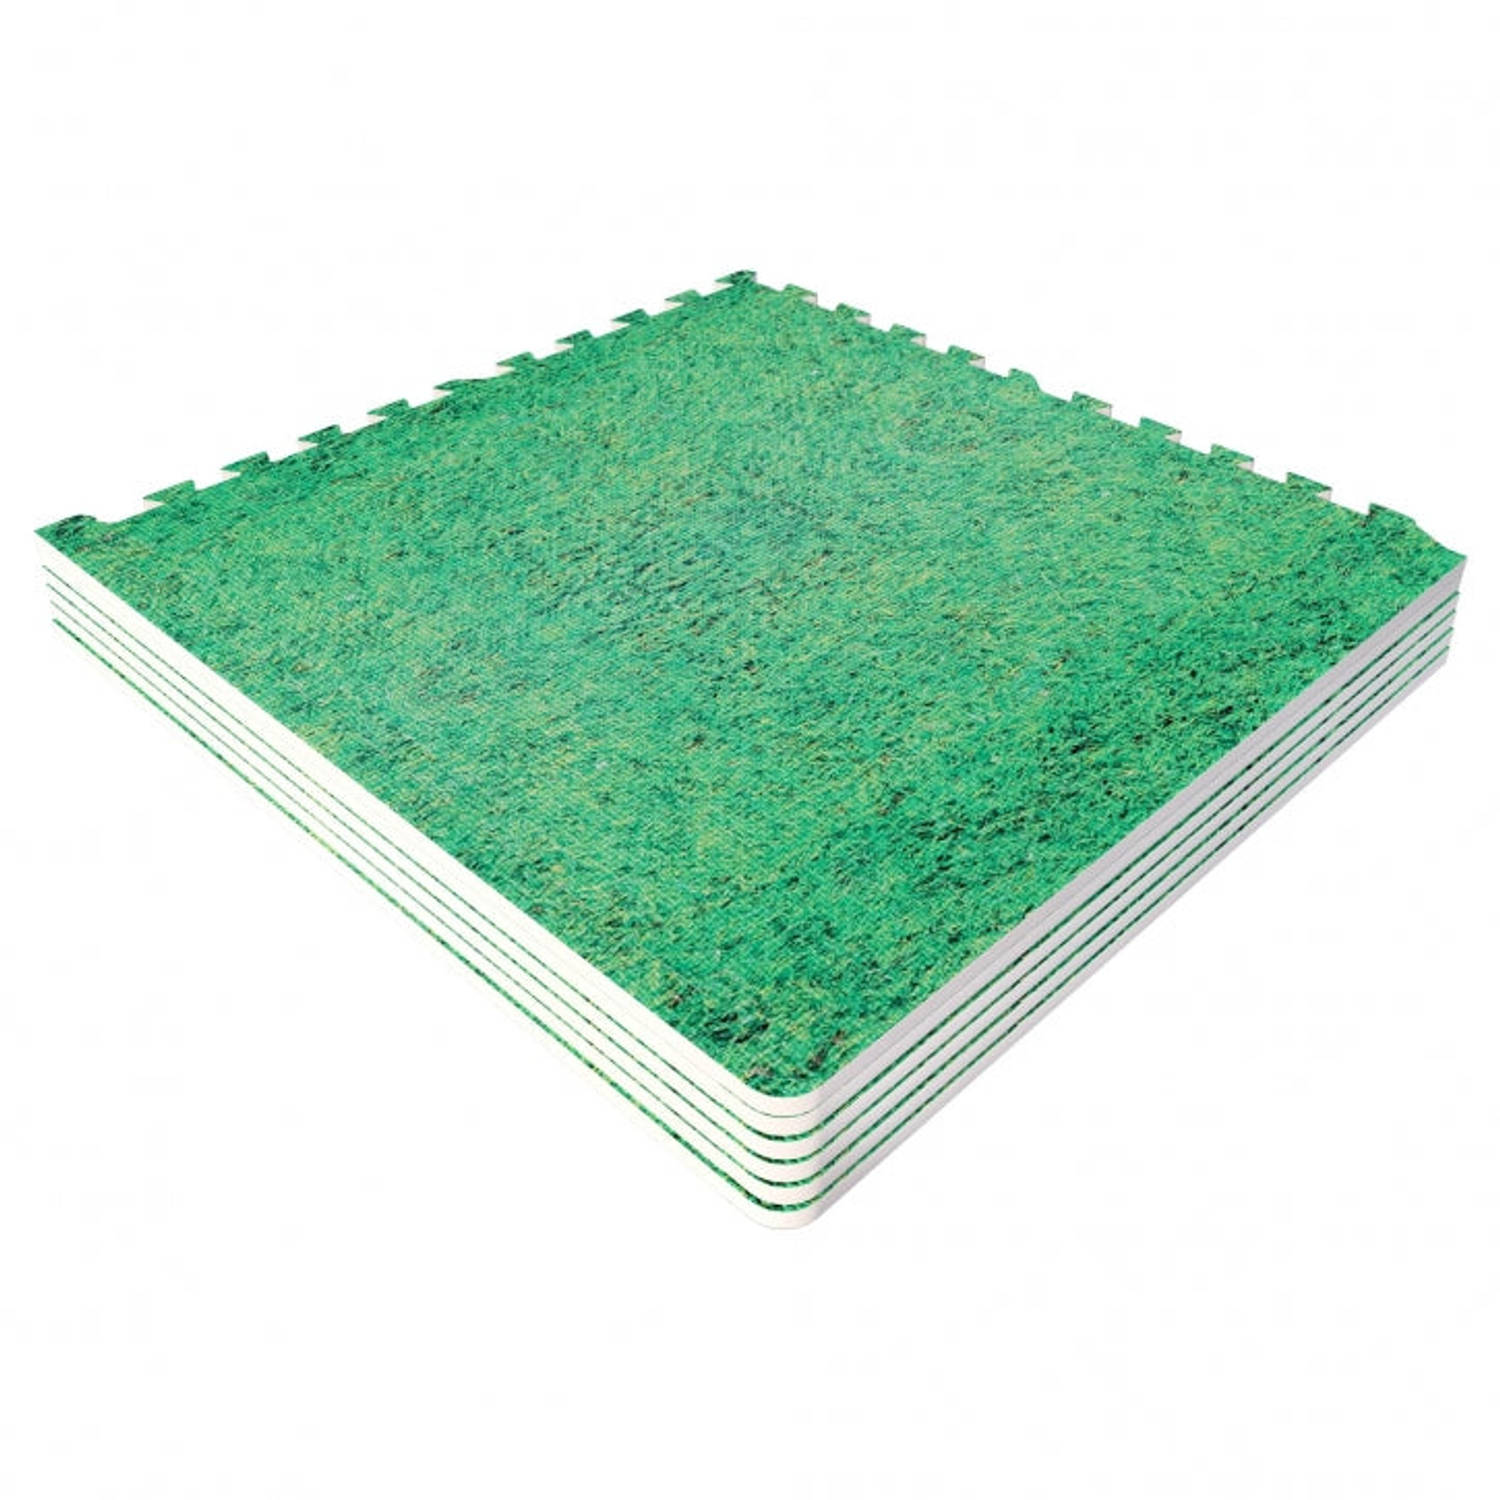 Sportschool Vloer Beschermingsmatten (6 matten + 12 eindstukken) Gras look Groen